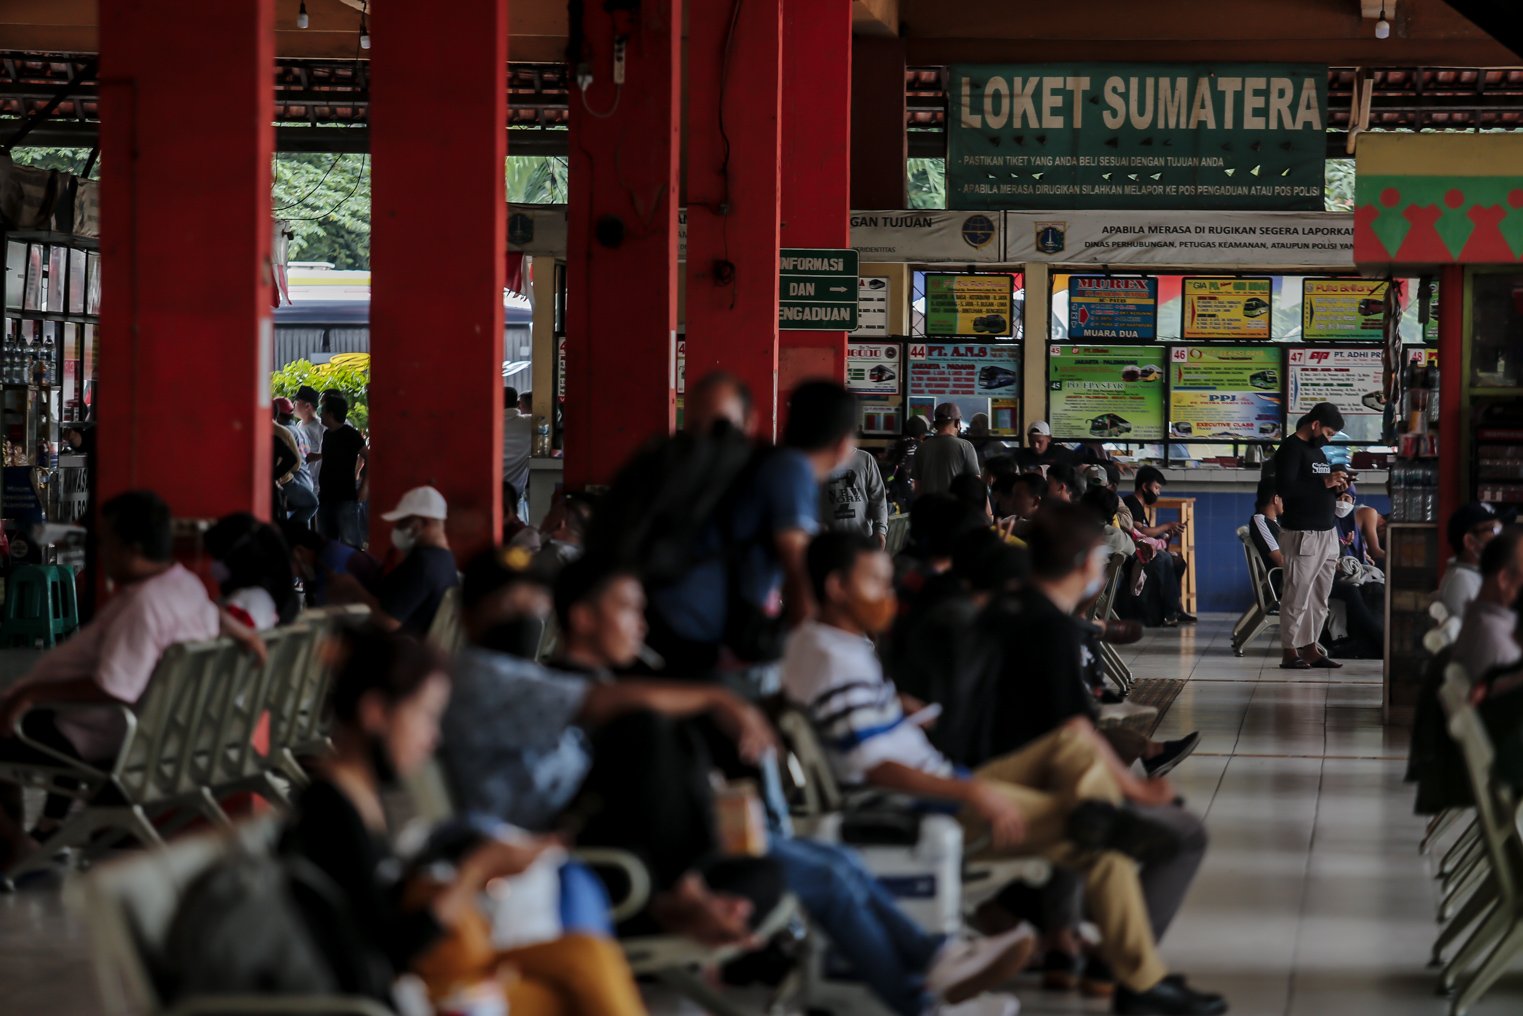 Sejumlah calon penumpang duduk mengantre sebelum keberangkatan di Terminal Kampung Rambutan, Jakarta, Selasa (21/12/2021). Kepala Terminal Kampung Rambutan Yulza Ramadhoni mengatakan, jumlah penumpang bus alami kenaikan hingga 10 persen pada menjelang Natal 2021 dan Tahun Baru 2022.